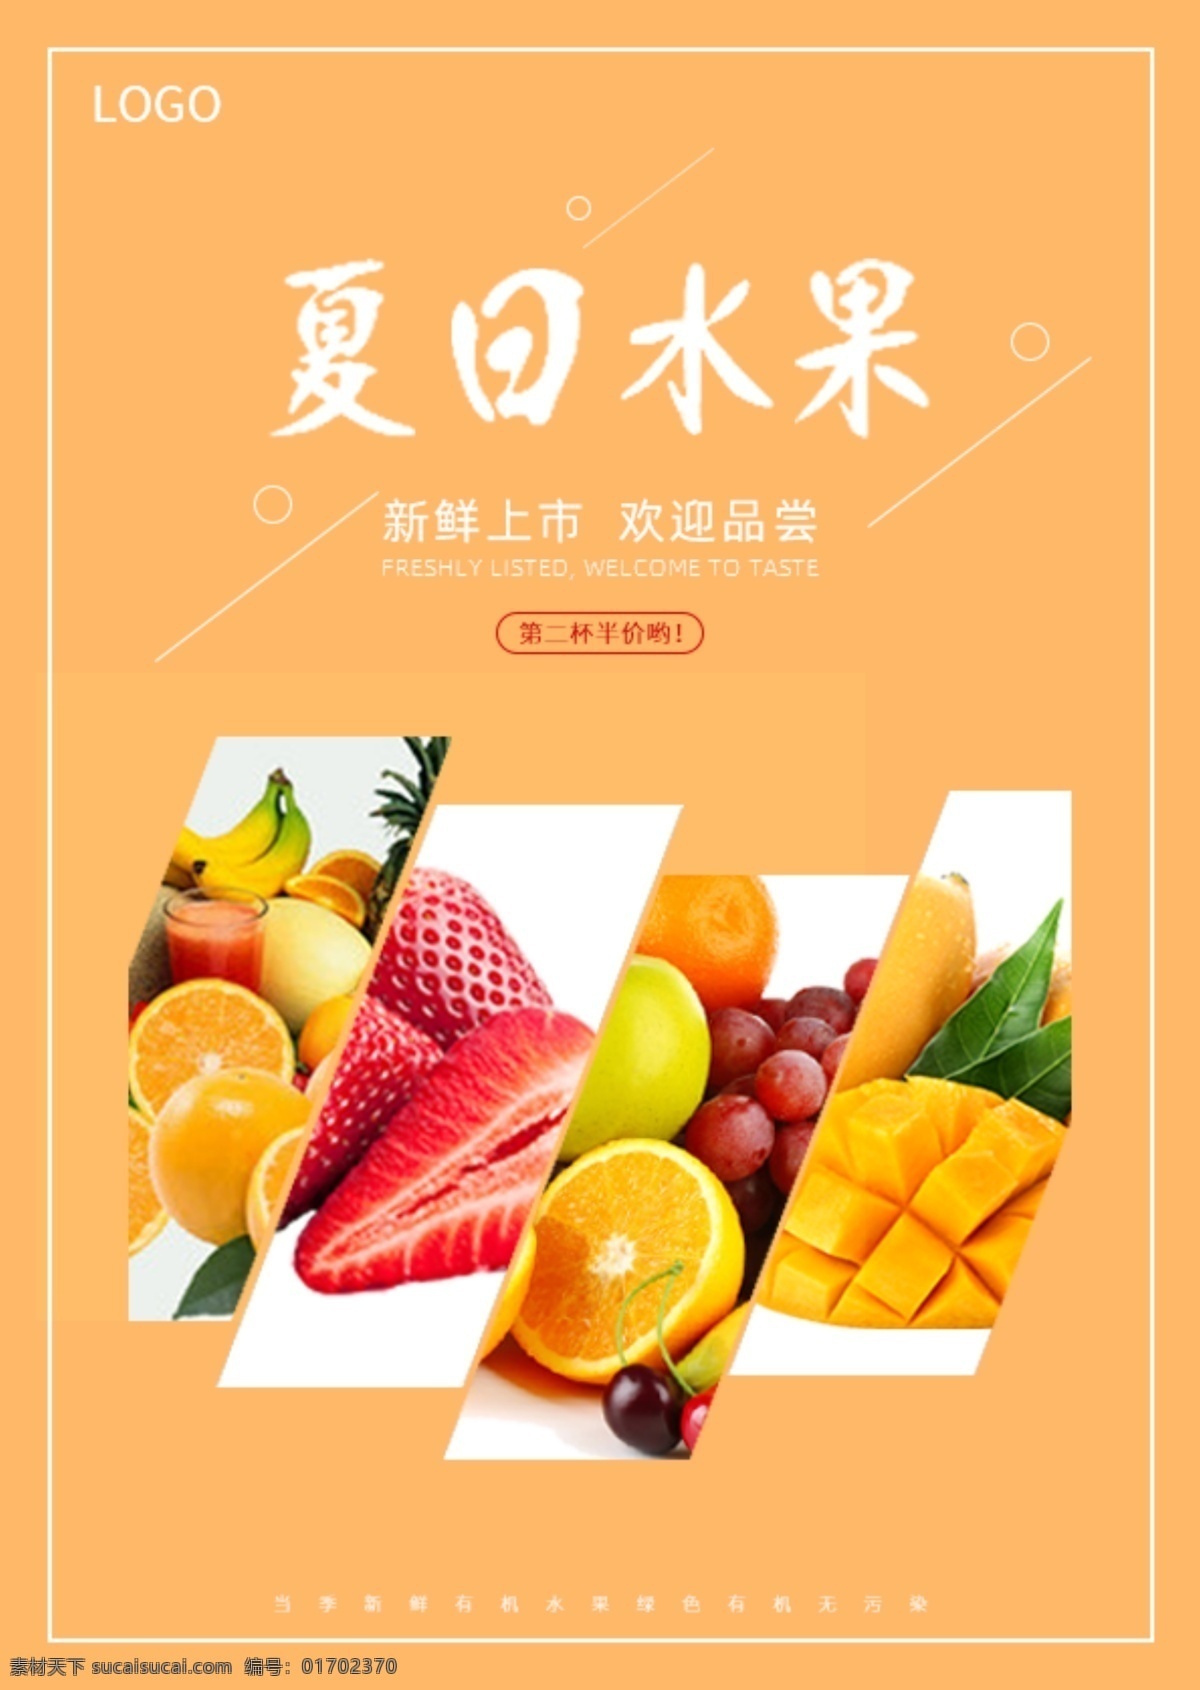 夏日水果图片 夏日水果 夏日 水果 水果海报 夏日水果海报